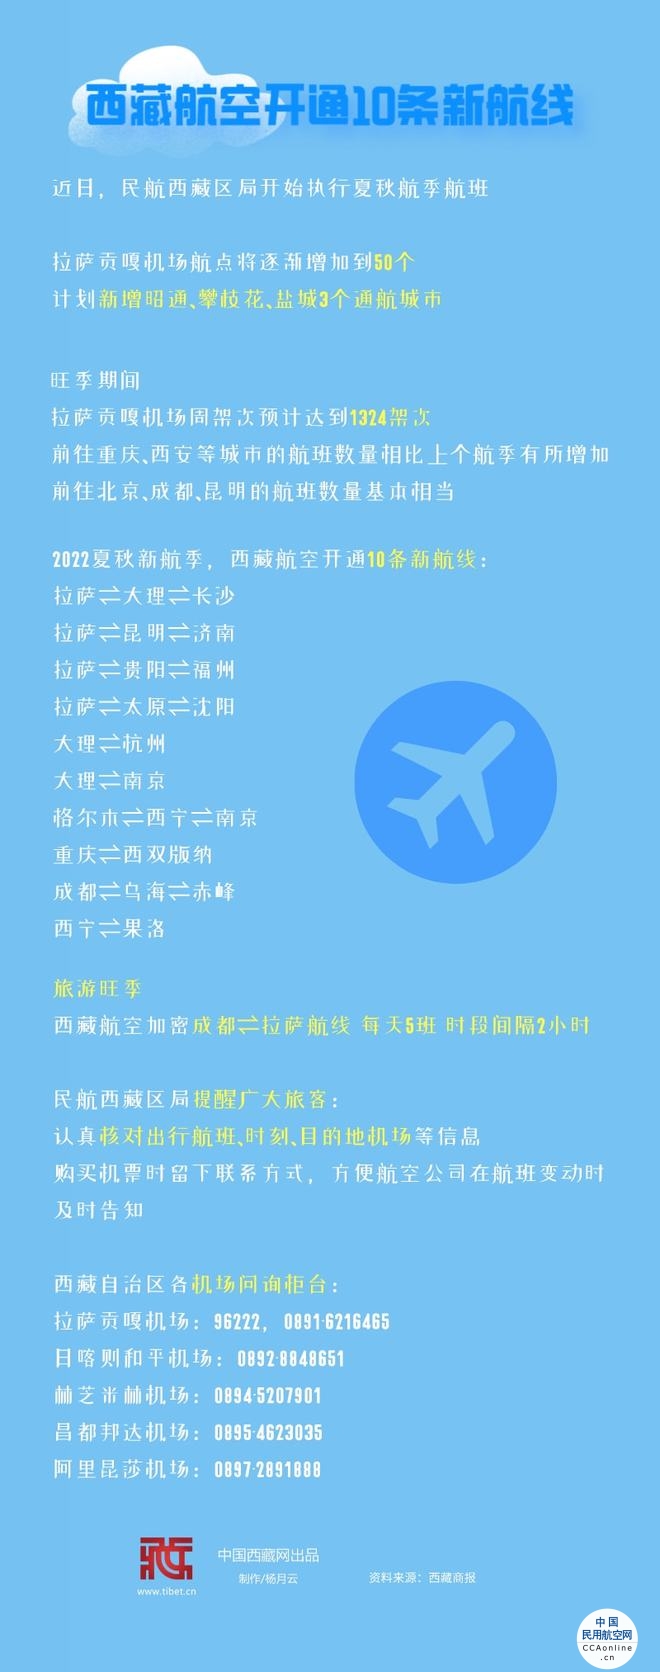 西藏航空开通10条新航线